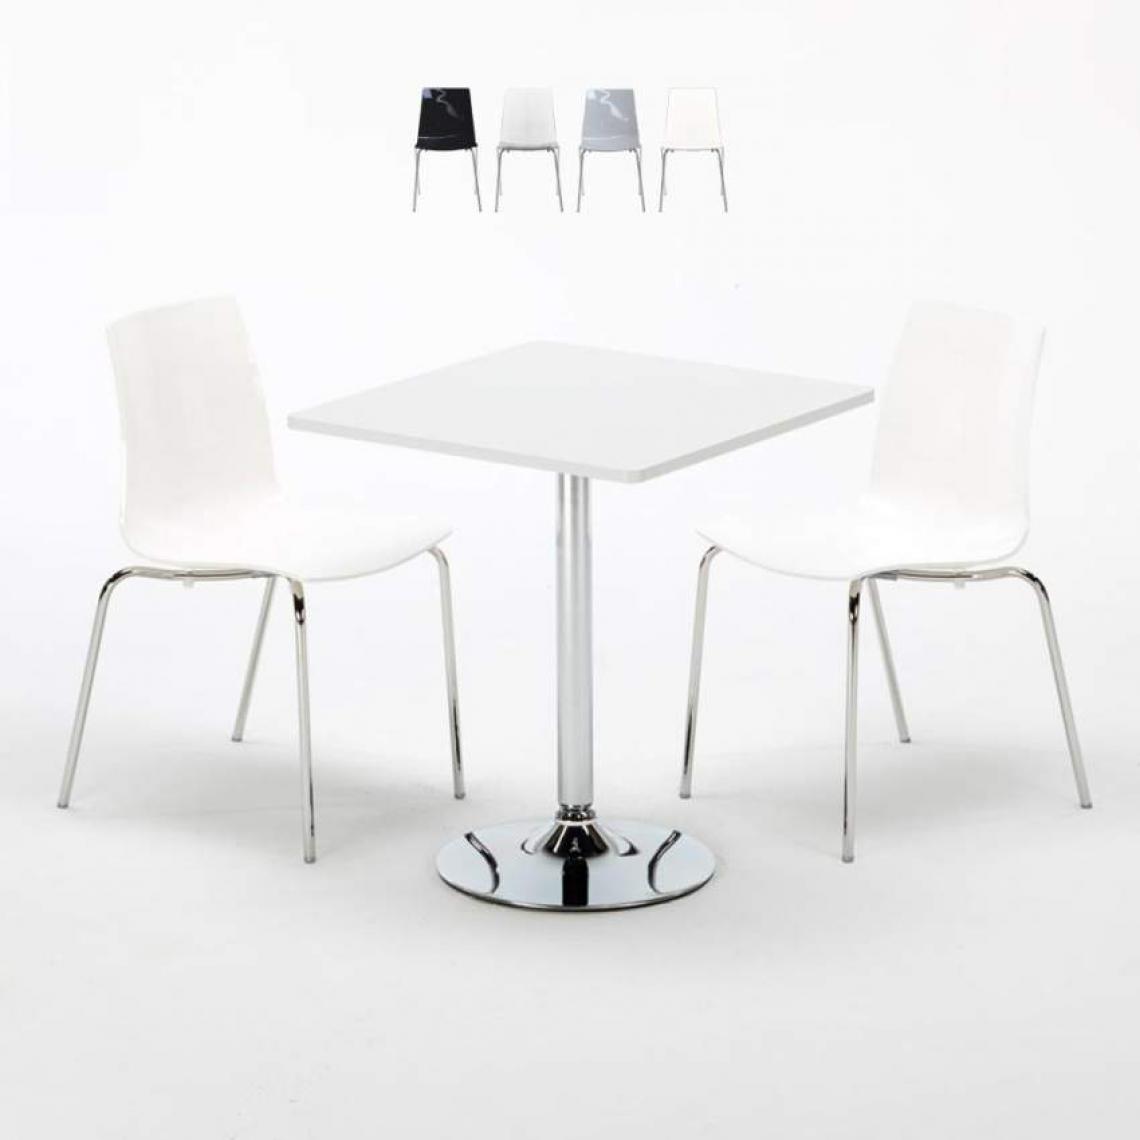 Grand Soleil - Table Carrée Blanche 70x70cm Avec 2 Chaises Colorées Et Transparentes Set Intérieur Bar Café Lollipop Titanium, Couleur: Blanc - Tables à manger